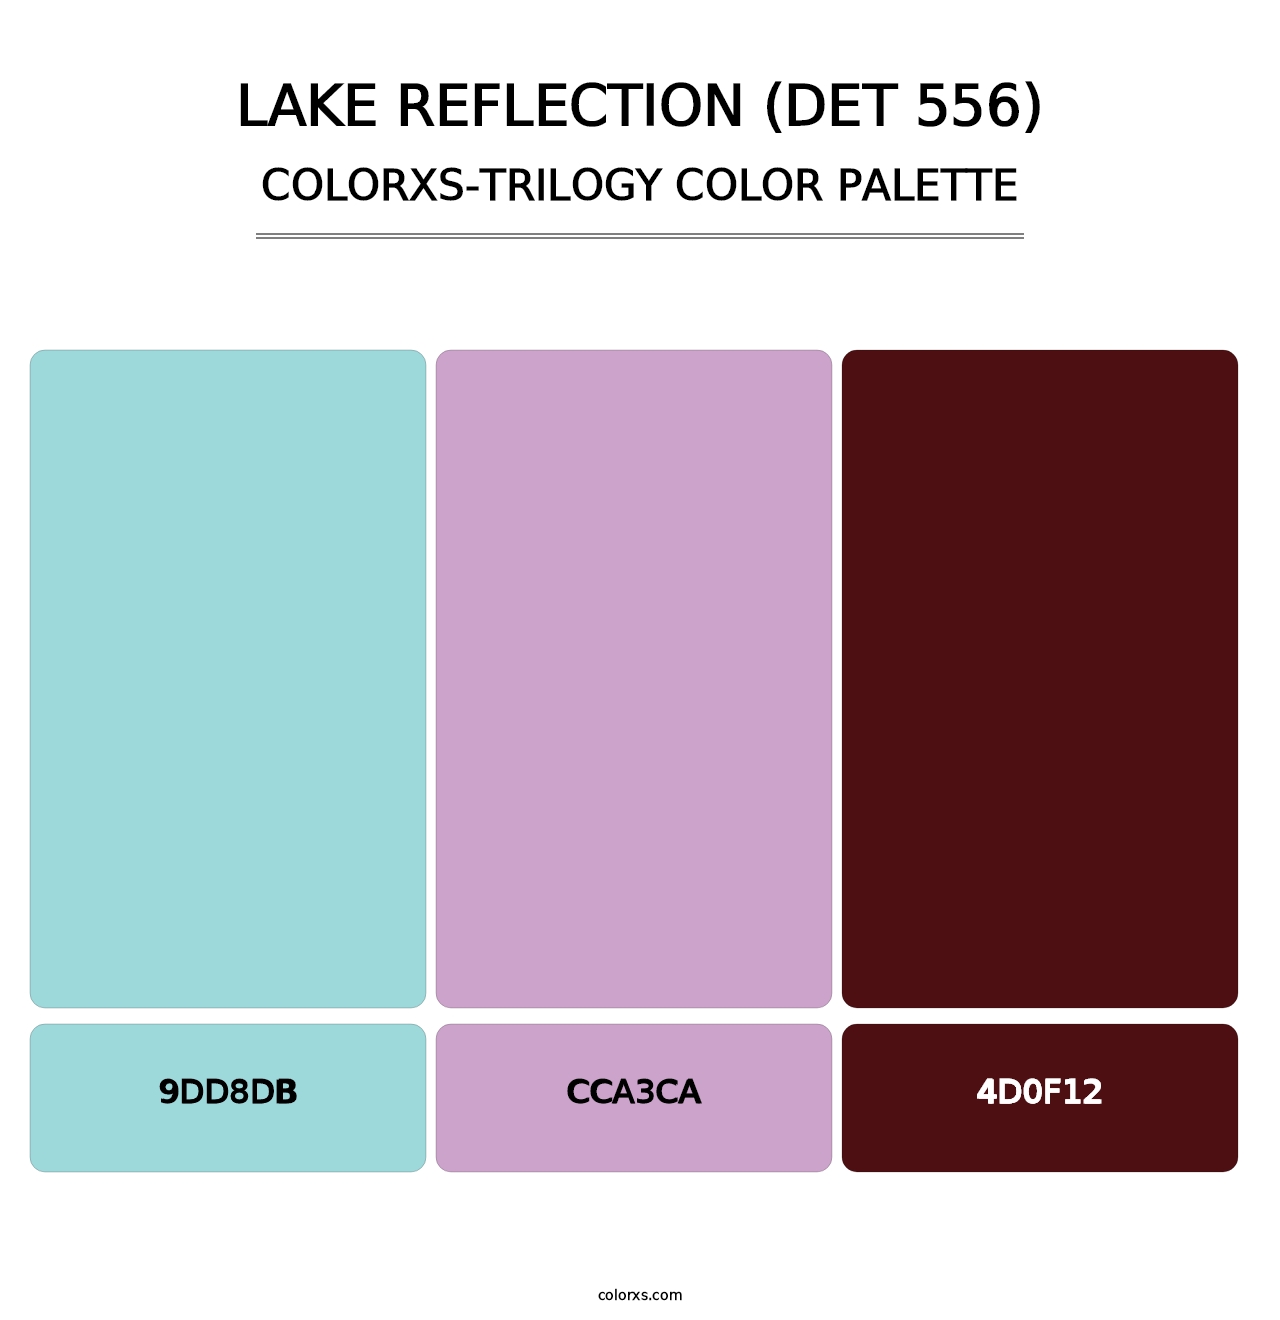 Lake Reflection (DET 556) - Colorxs Trilogy Palette